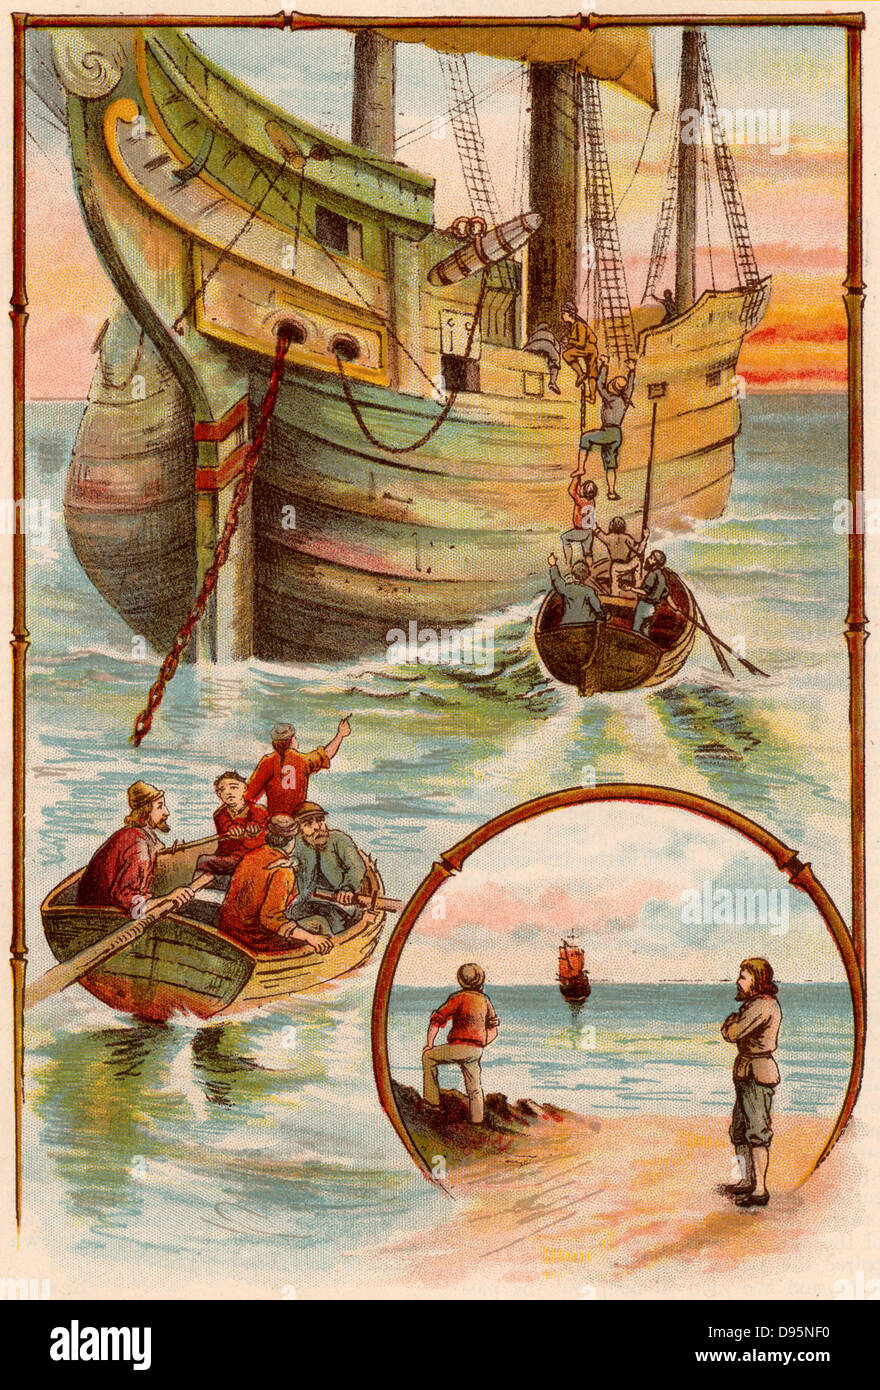 La vie et d'étranges aventures surprenantes de Robinson Crusoé de Daniel Defoe. D'abord publié en 1719, il est demandé d'être le premier roman anglais. Crusoé aidant à reprendre le bateau anglais de les mutins. Les mutins sont abandonnés sur l'île tandis que Crusoé et vendredi et les fidèles membres de l'équipage a mis le cap sur l'Angleterre qui Crusoé n'a pas vu depuis 28 ans. À partir de 'Bubbles' c1900 publié par Dr Barnados homes pour enfants. Oleograph. Banque D'Images